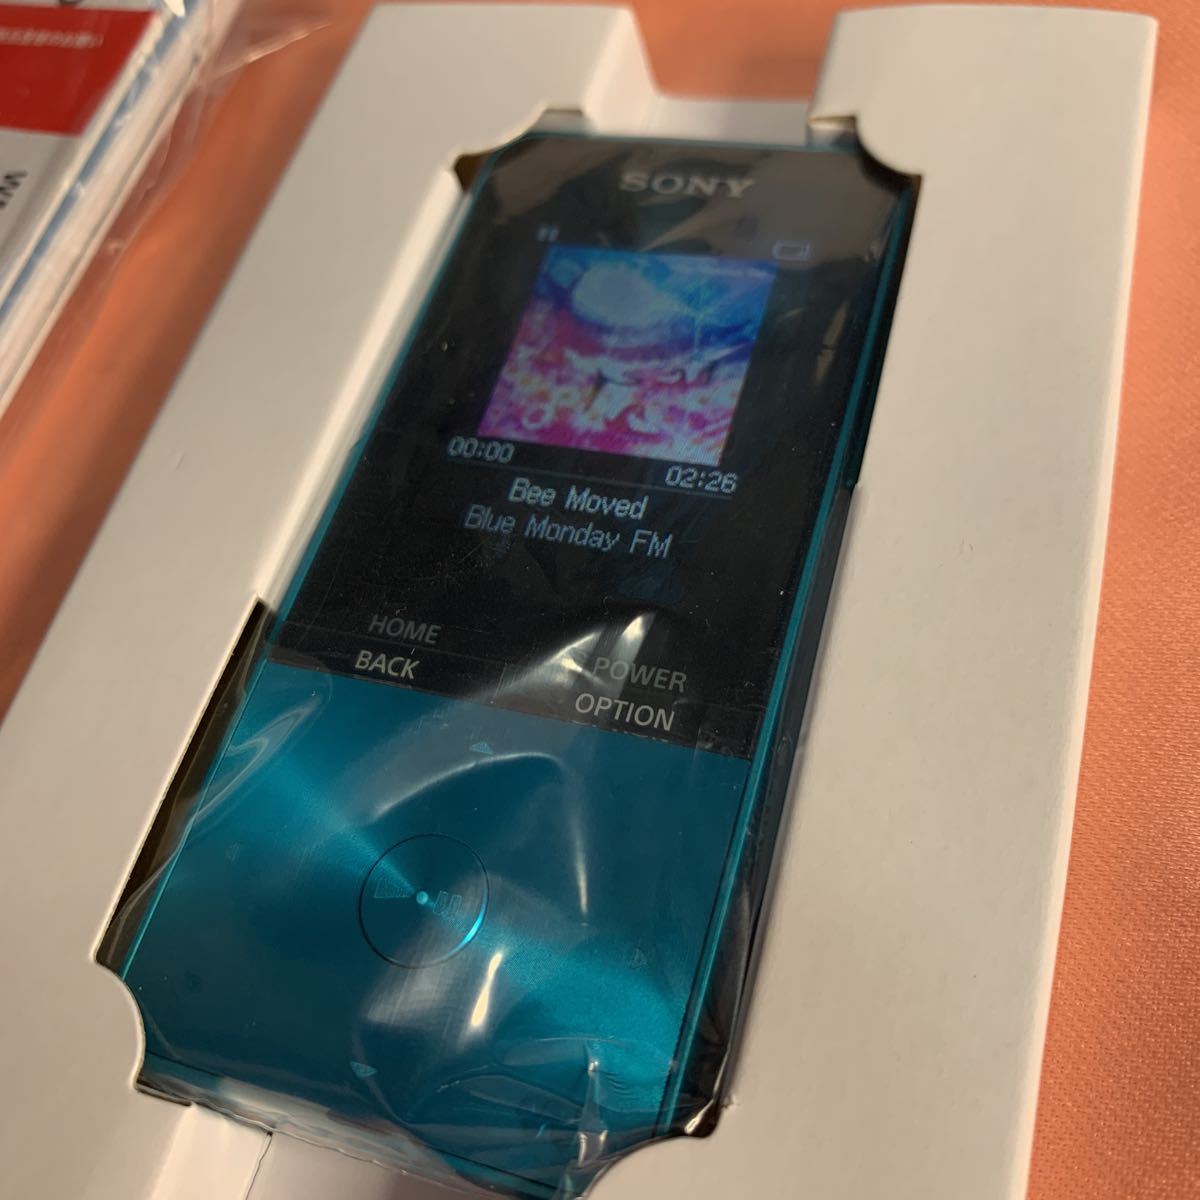 ソニー ウォークマン Sシリーズ 16GB NW-S315 MP3プレーヤー Bluetooth対応 最大52時間連続再生 イヤホン付属 ブルー  新品未使用品(本体)｜売買されたオークション情報、ヤフオク! の商品情報をアーカイブ公開